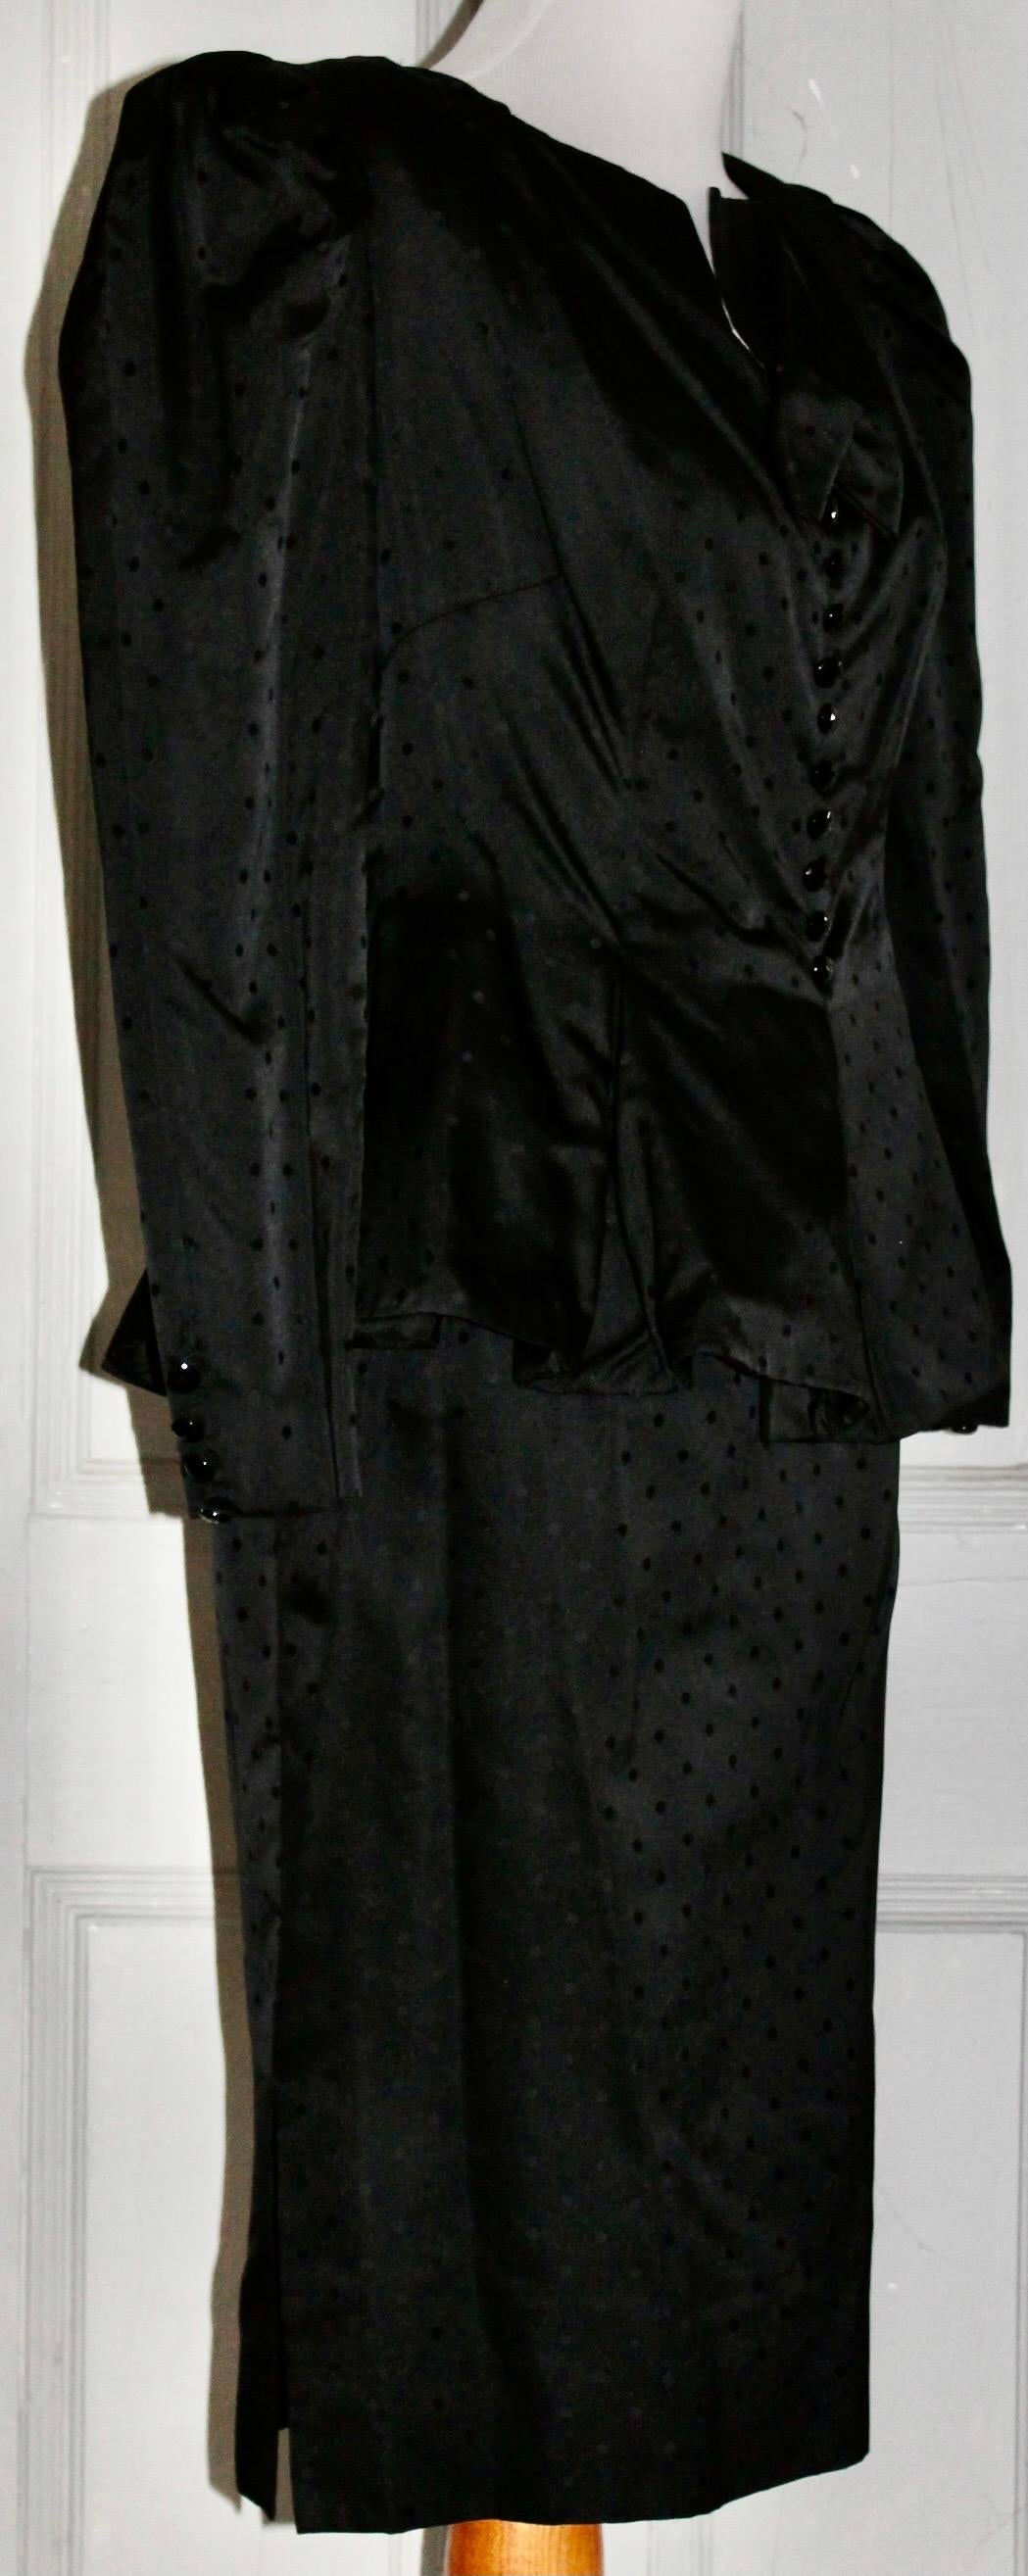 Offrant un costume en soie noire Nina Ricci 'Boutique' Paris, vendu par Bergdorf Goodman.
Veste à épaules bouffantes, jupe à la taille, pois noirs sur noirs, doublure en soie, taille Eu 38-40 environ. Longueur de la jupe : 25,50